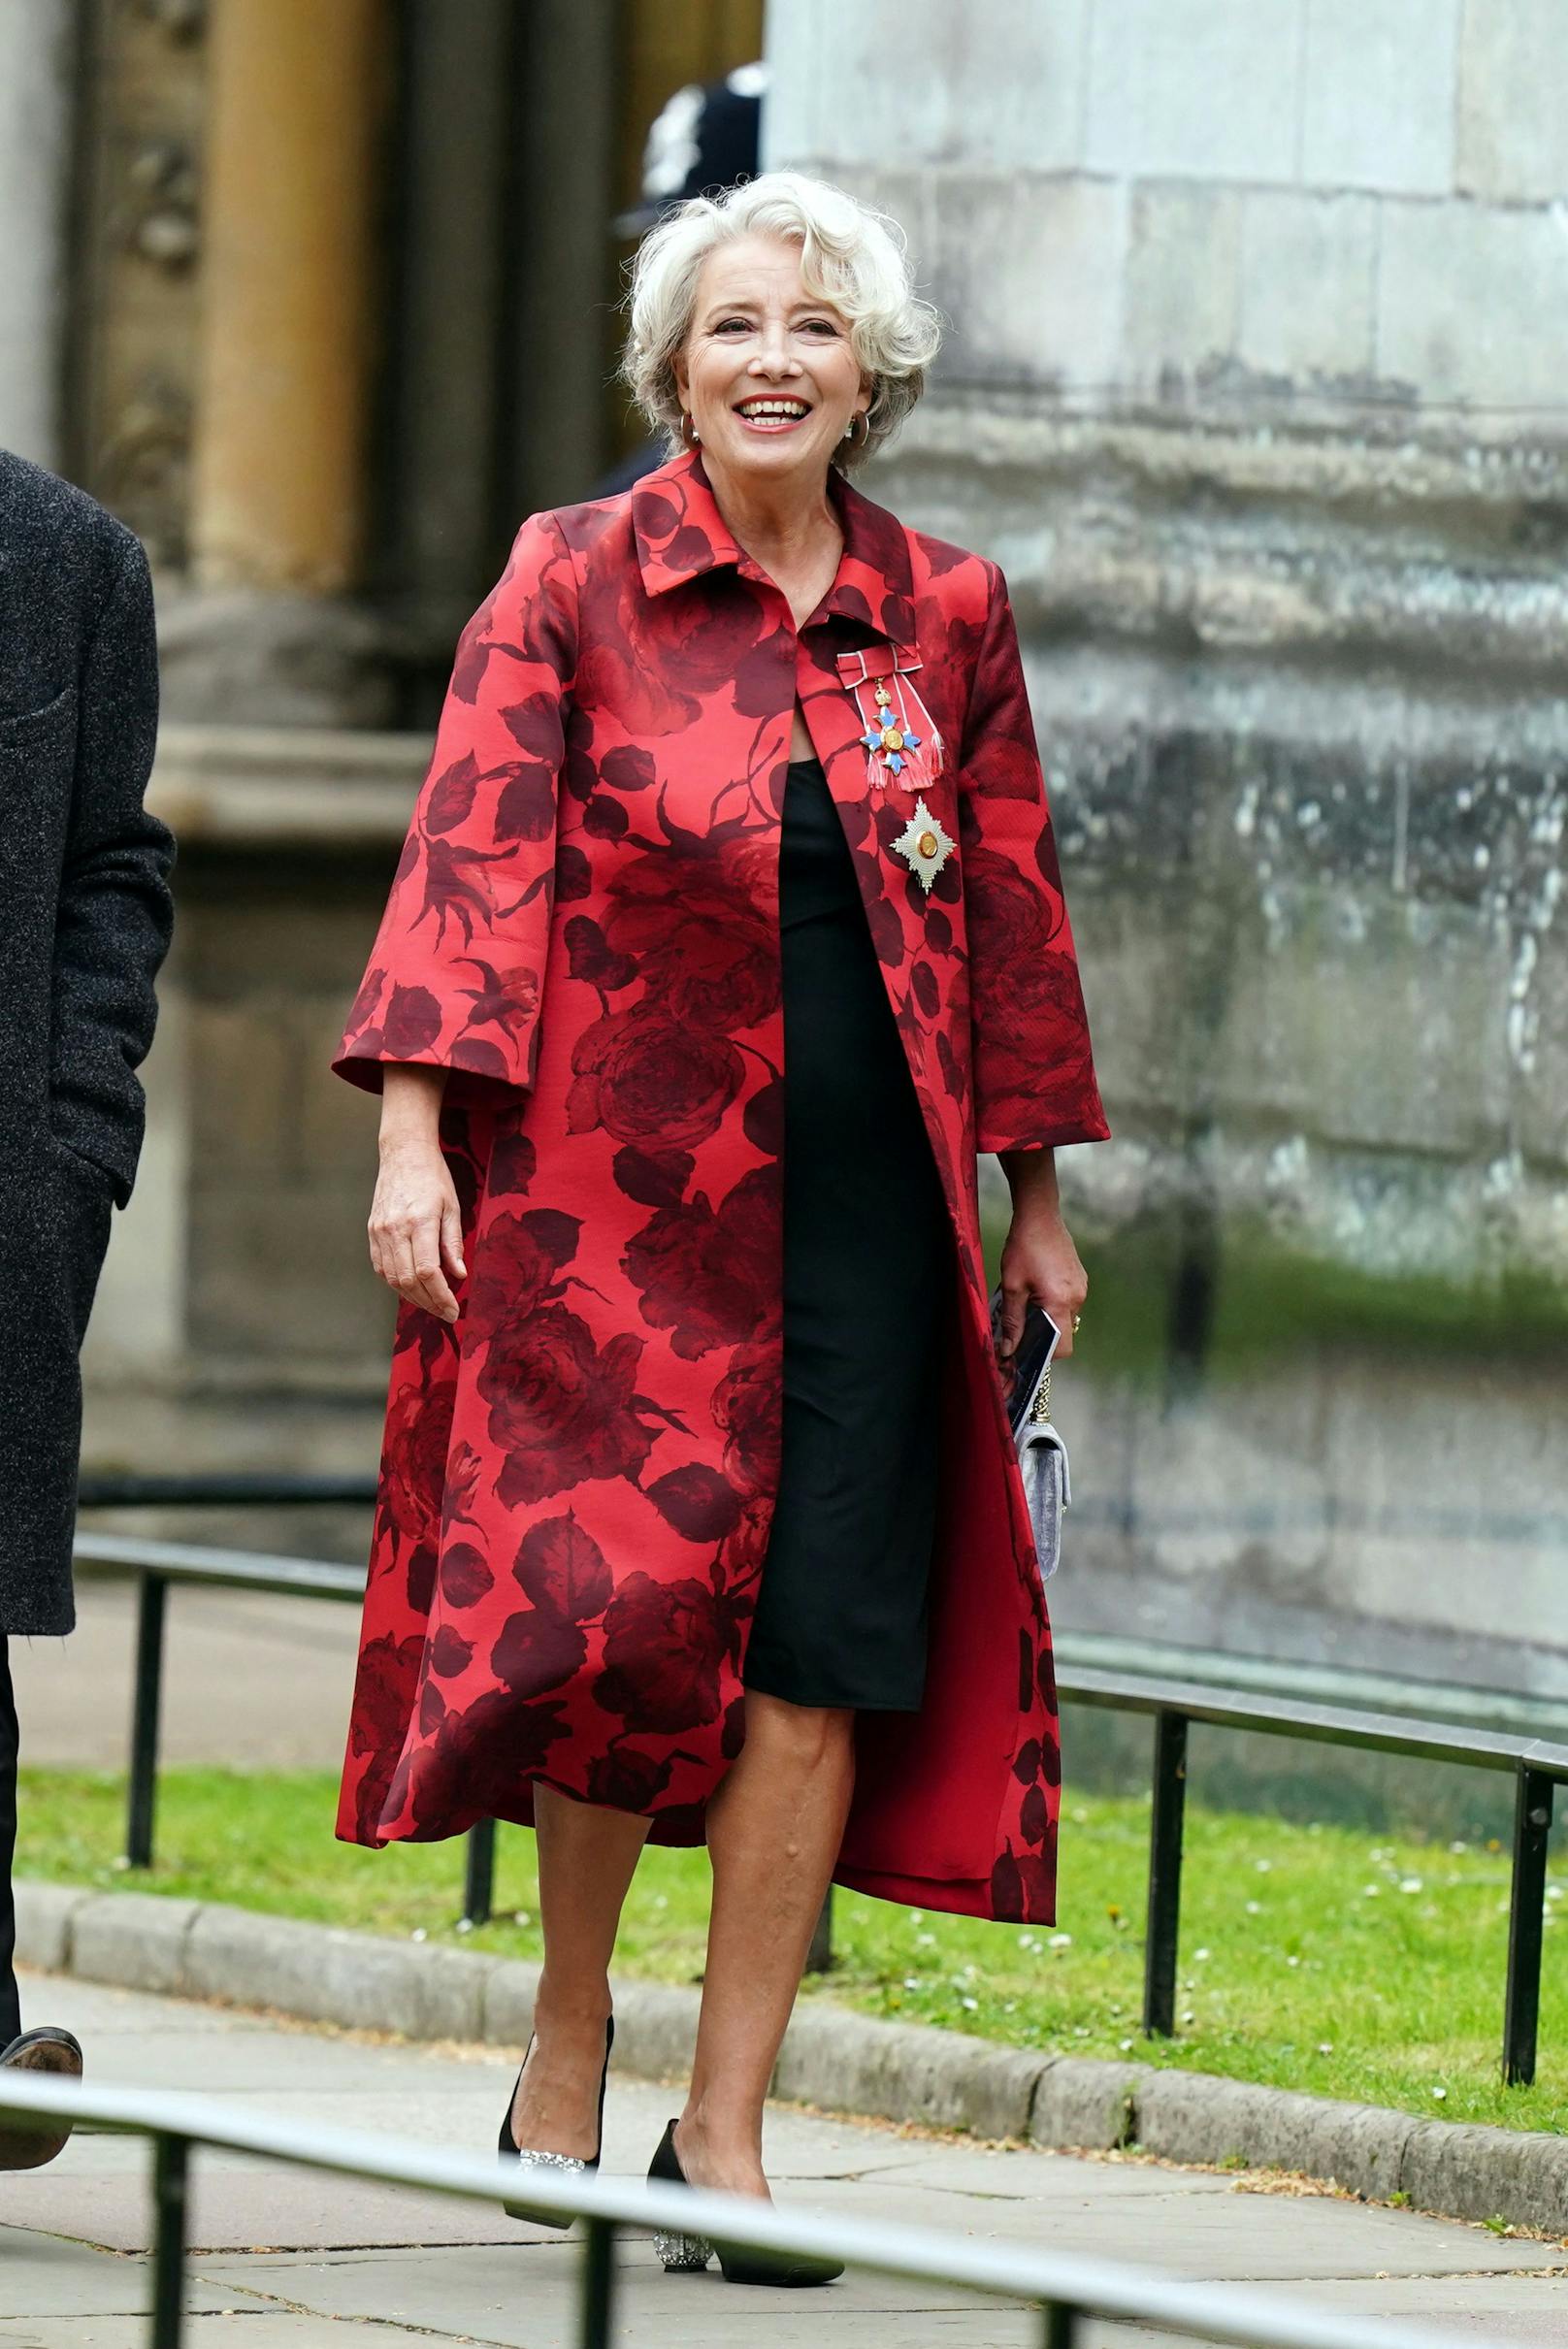 Schauspielerin Dame Emma Thompson wählt für die Krönung ein schwarzes knielanges Kleid. Darüber trug die 64-Jährige einen roten Mantel mit Blumenmuster.